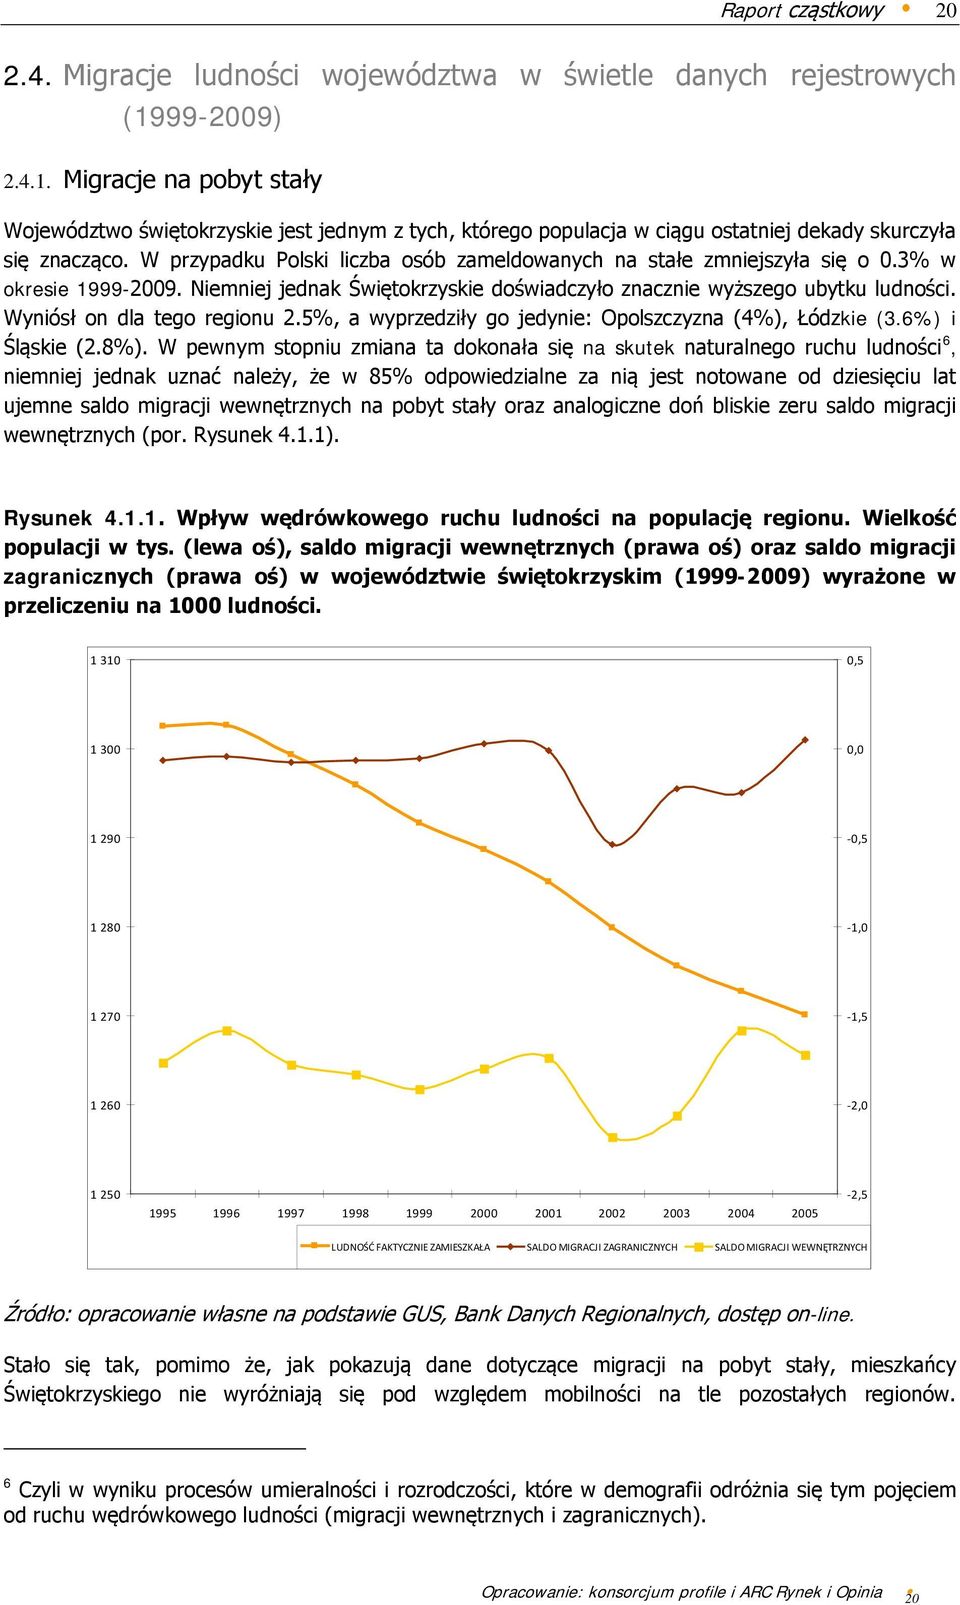 W przypadku Polski liczba osób zameldowanych na stałe zmniejszyła się o 0.3% w okresie 1999-2009. Niemniej jednak Świętokrzyskie doświadczyło znacznie wyższego ubytku ludności.